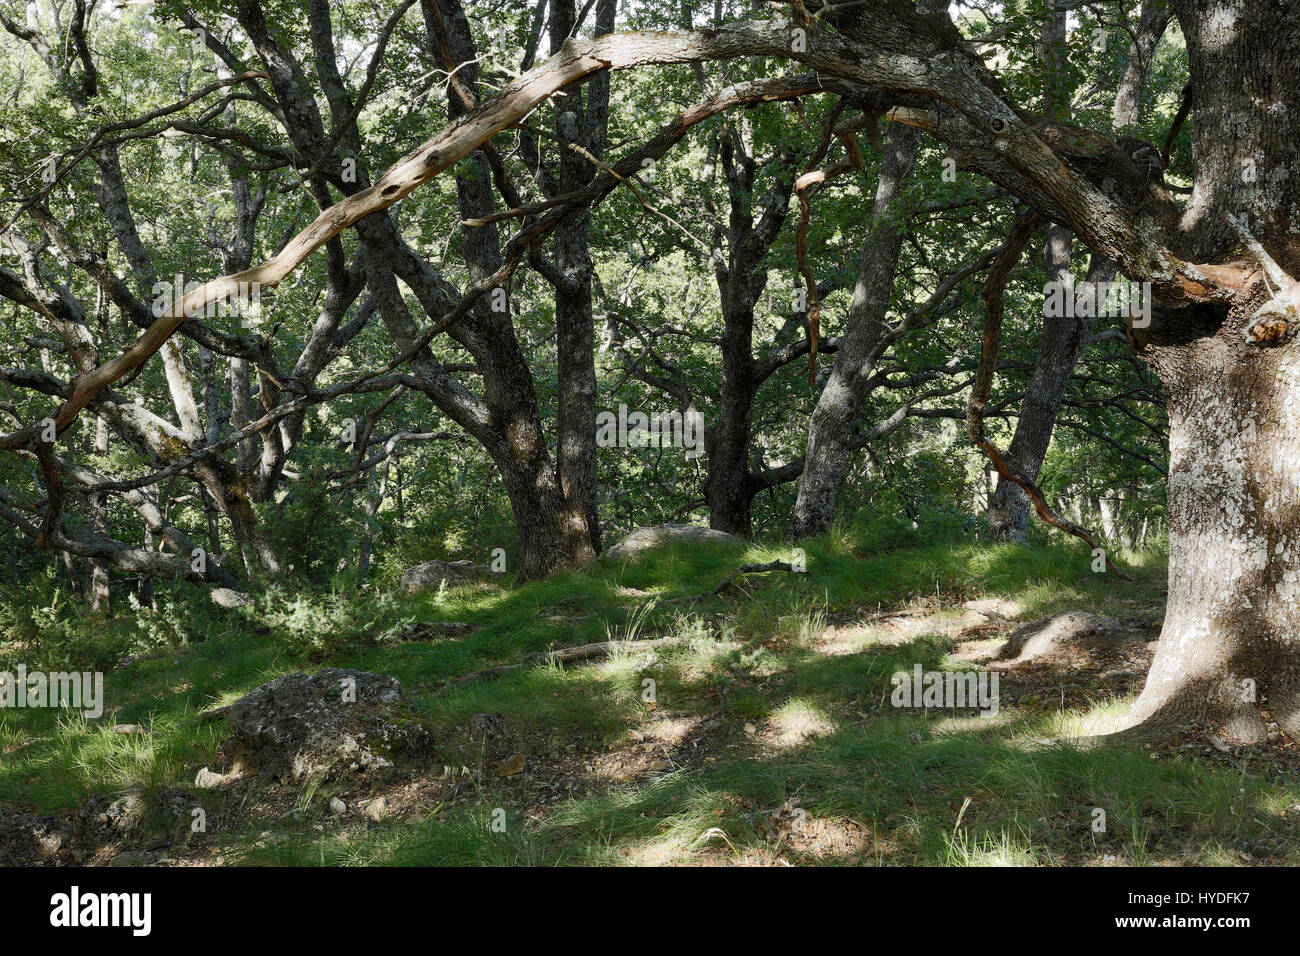 Eichen, Eichenwald, Sommer, Bargemon, Nord-östlich von Draguignan, Departement Var, französischen Gemeinde, Frankreich Stockfoto